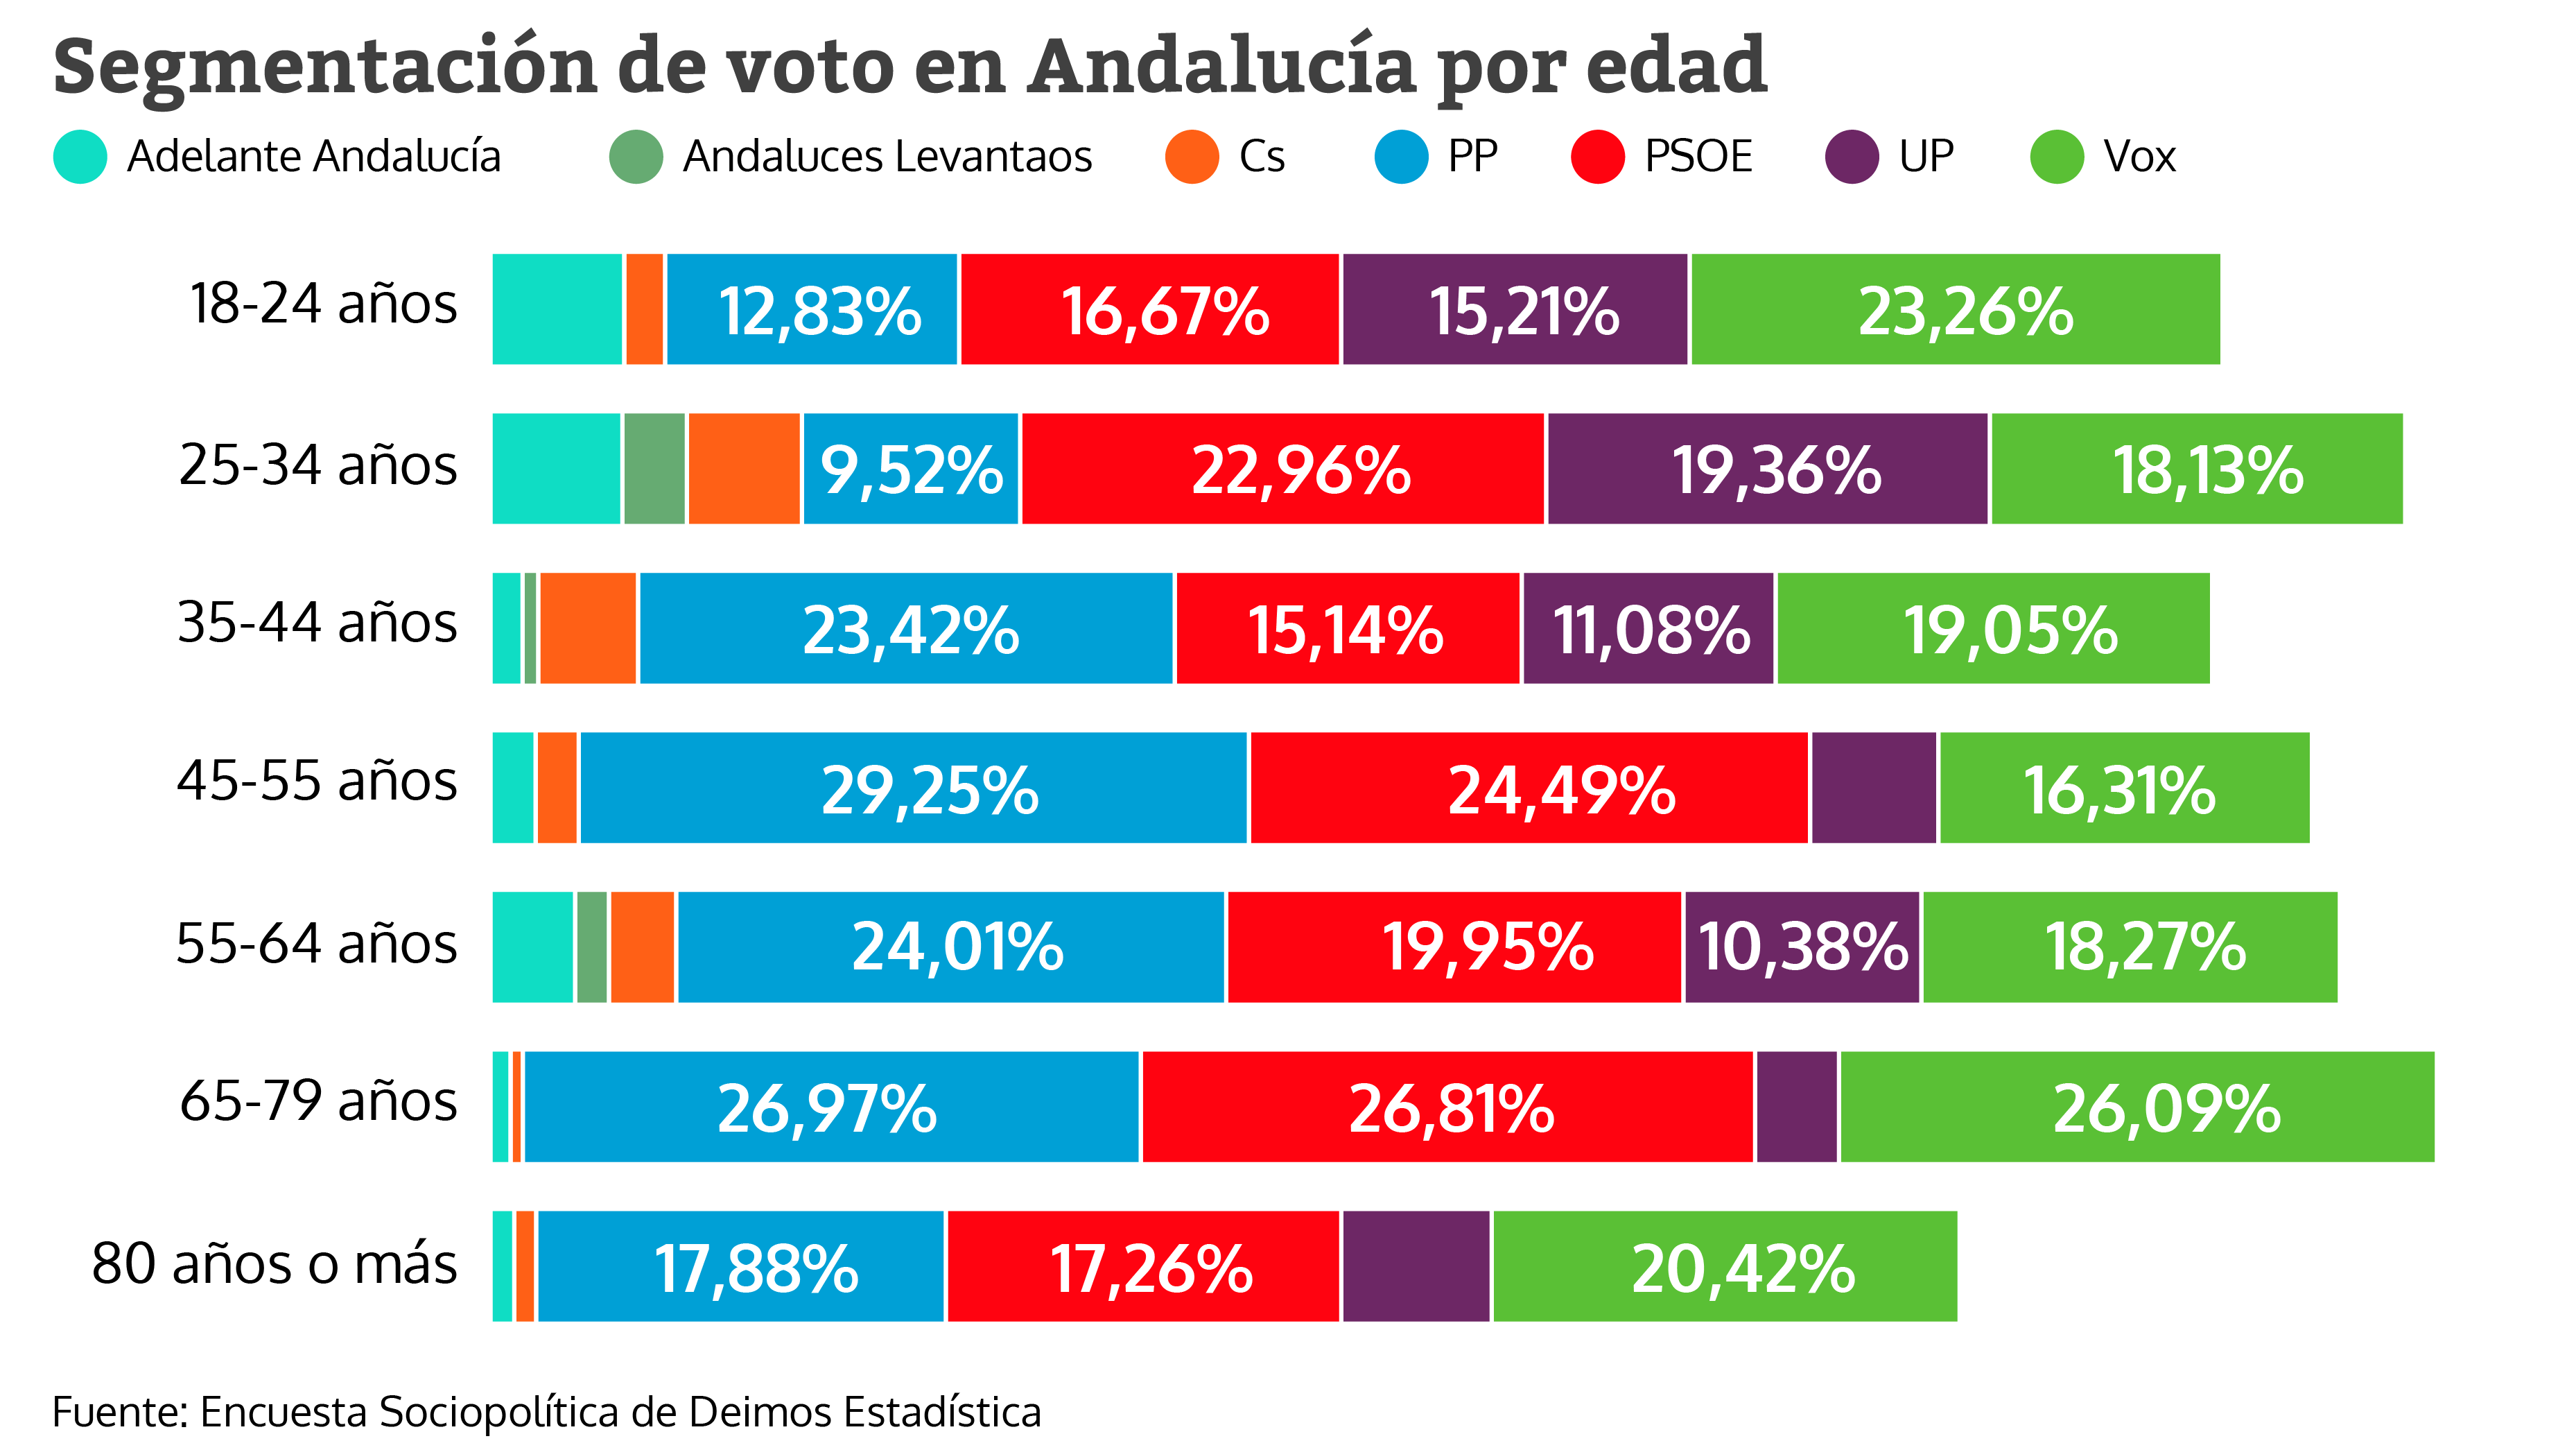 Segmentación de voto en Andalucía por edad